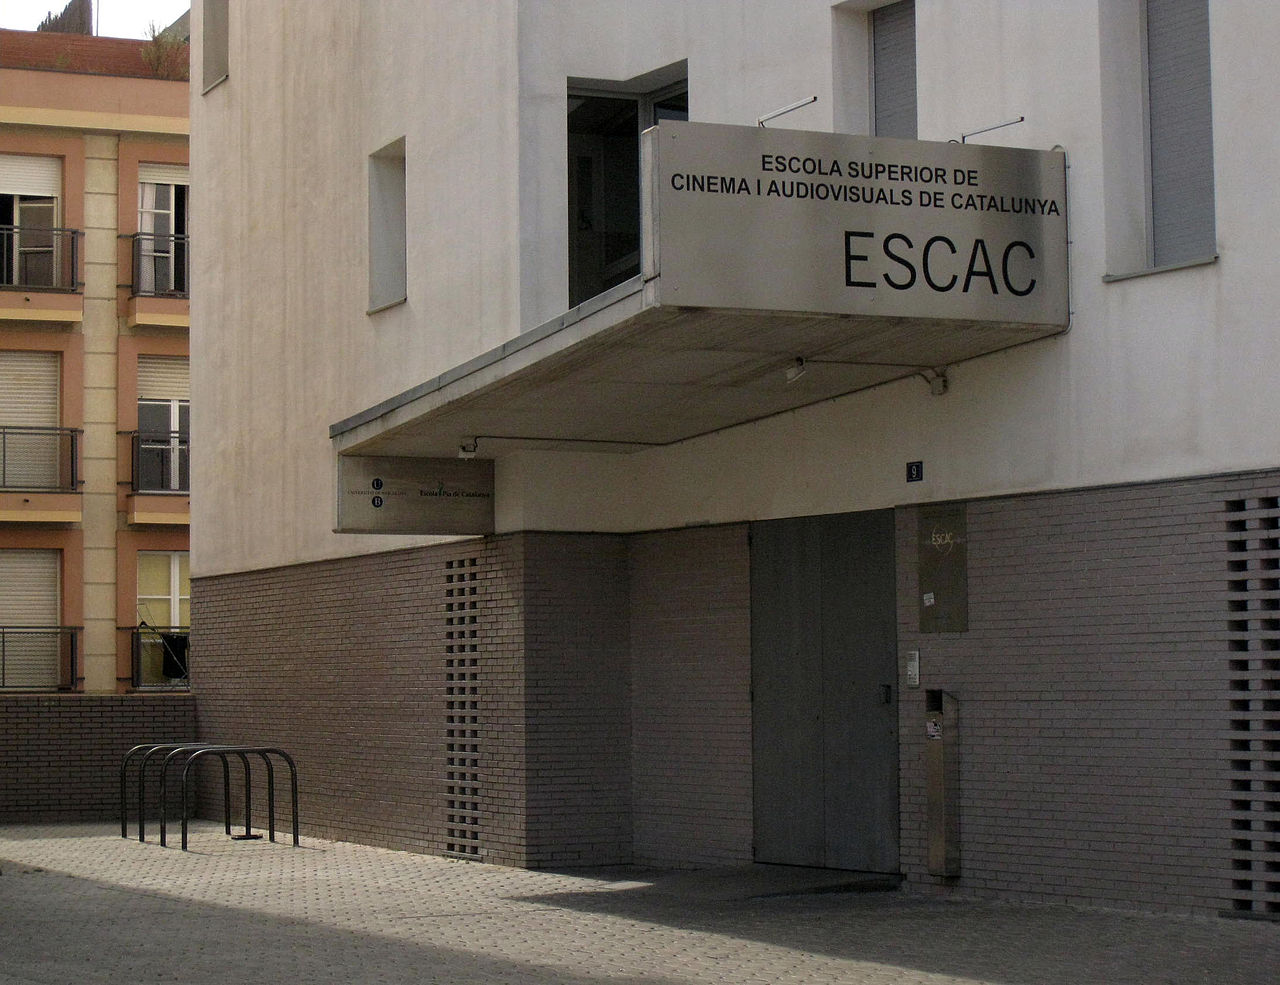 File:089 ESCAC, Escola Superior de Cinema i Audiovisuals de Catalunya, adscrita a la Universitat de Barcelona.jpg - Wikimedia Commons